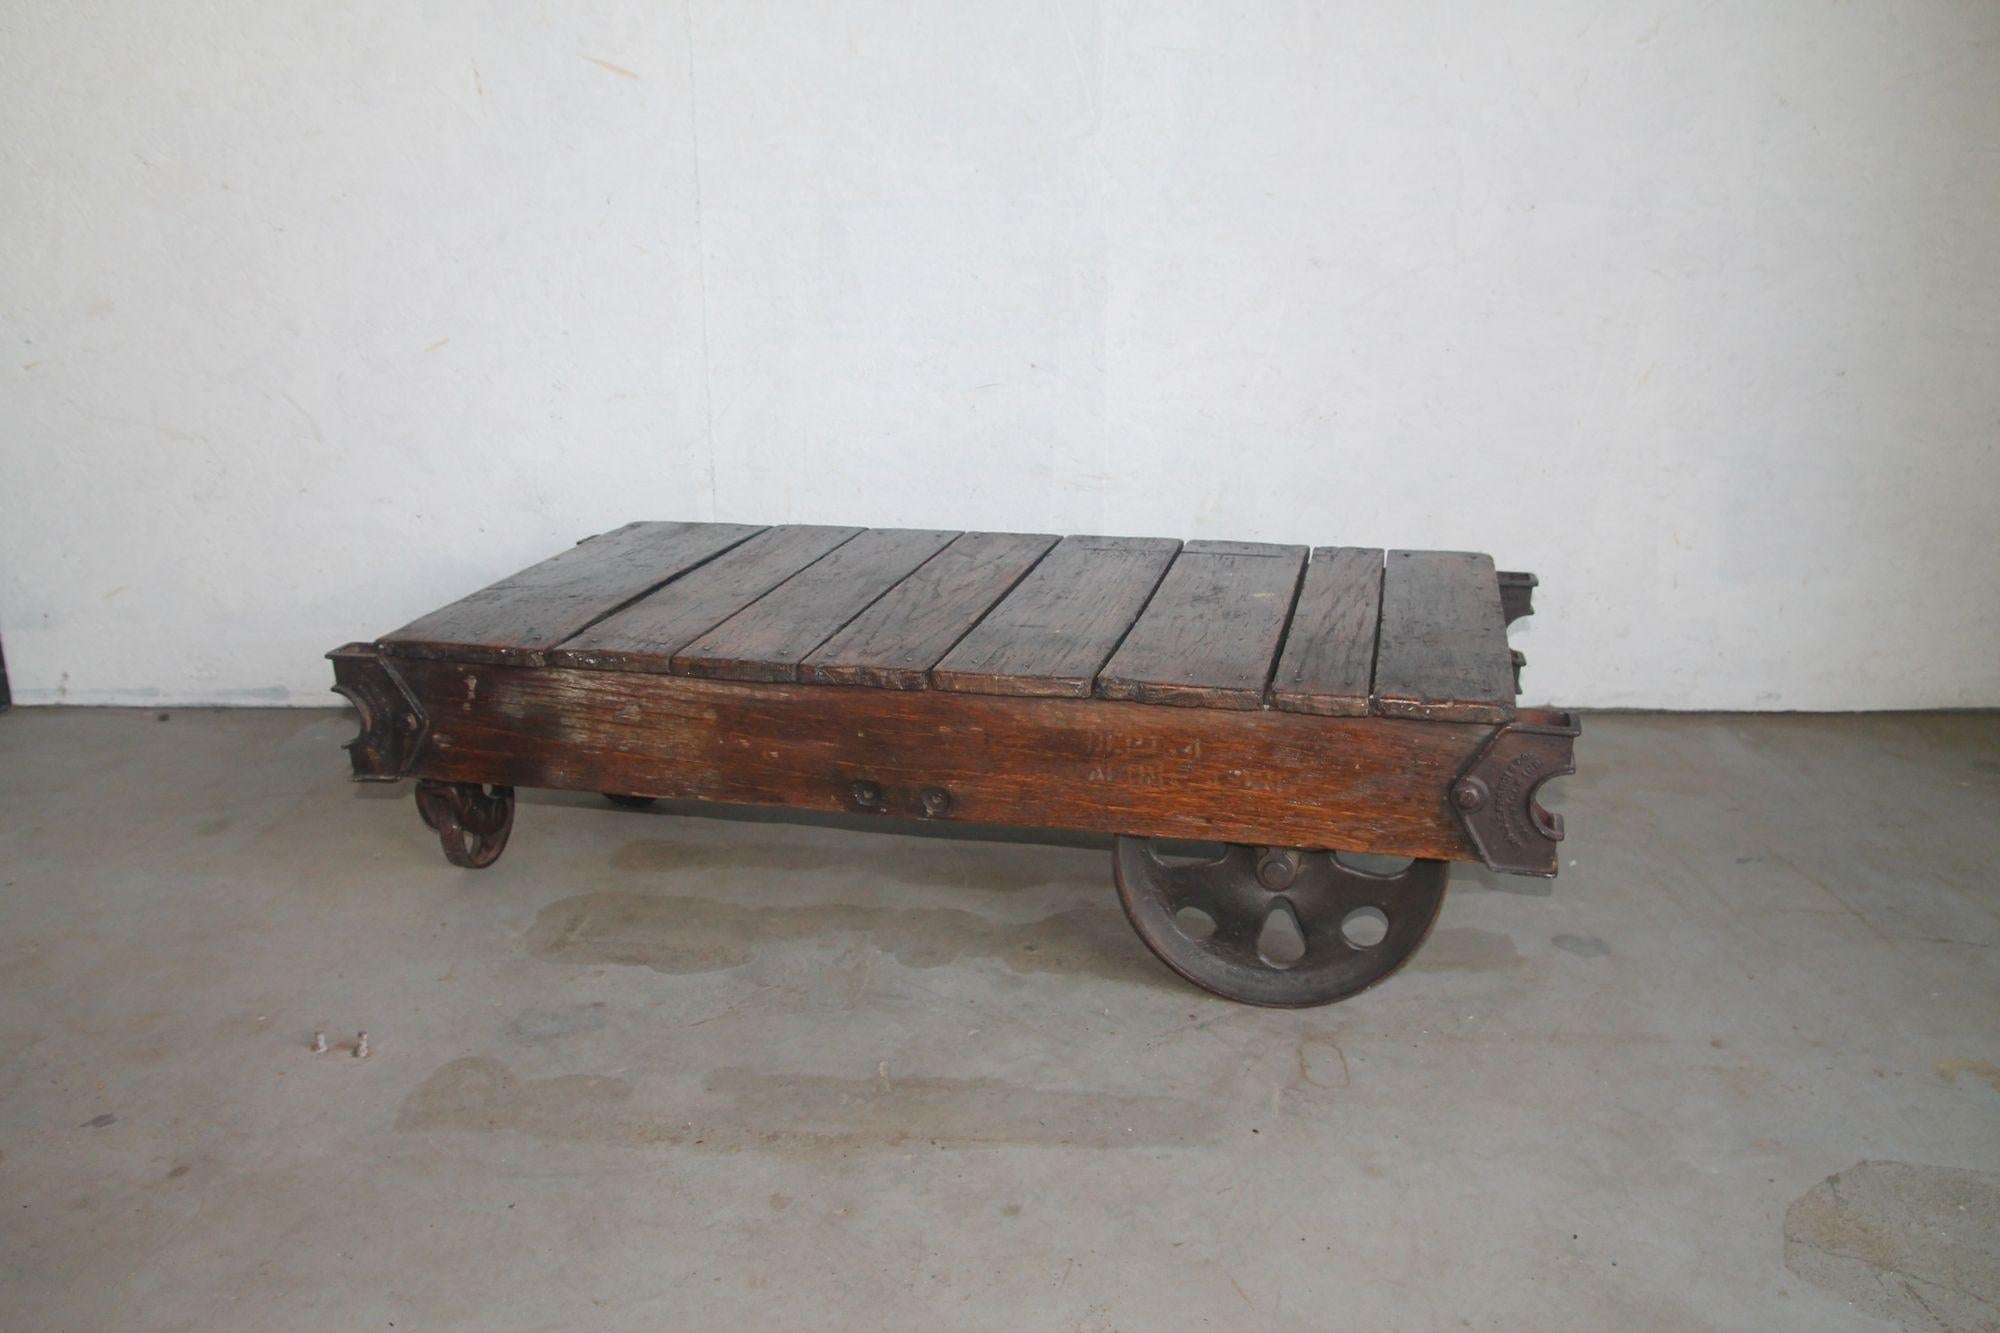 Nous avons le plaisir de vous proposer cette superbe table basse industrielle originale. Cet étonnant chariot a 4 roues en fer. Il s'intègre parfaitement à tout type de décor. Il vient d'être retiré d'un loft de New York.